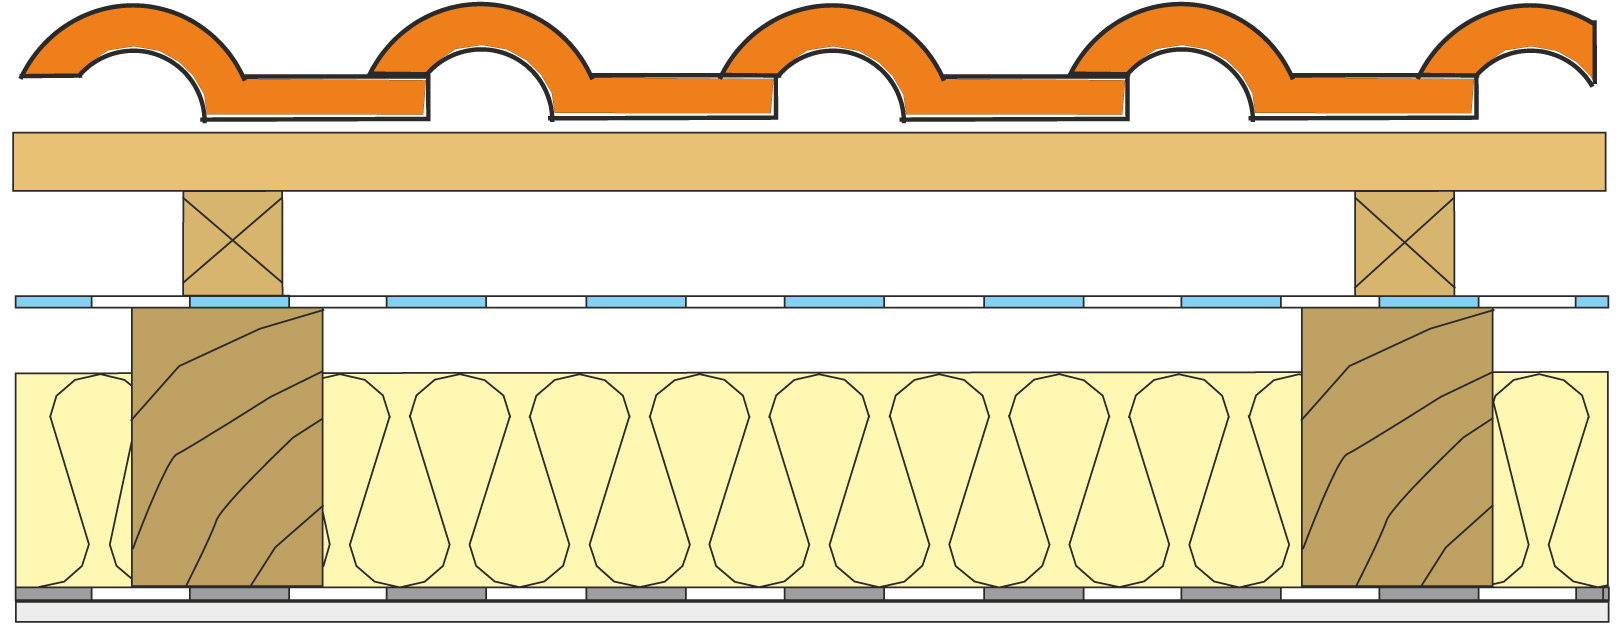 Obr. 1 Skladba trojplášťovej šikmej strechy Tepelná izolácia z čadiča alebo zo sklenej vaty je vložená medzi krokvy. Na interiérovej strane sa nacháza parozábrana ľahkého typu z PE vystuženého mriežkou. Ako poistná hydroizolácia je použitá fólia z perforovaného polyetylénu s veľmi malou UV stabilitou, ktorá je voľne napnutá na krokvách.